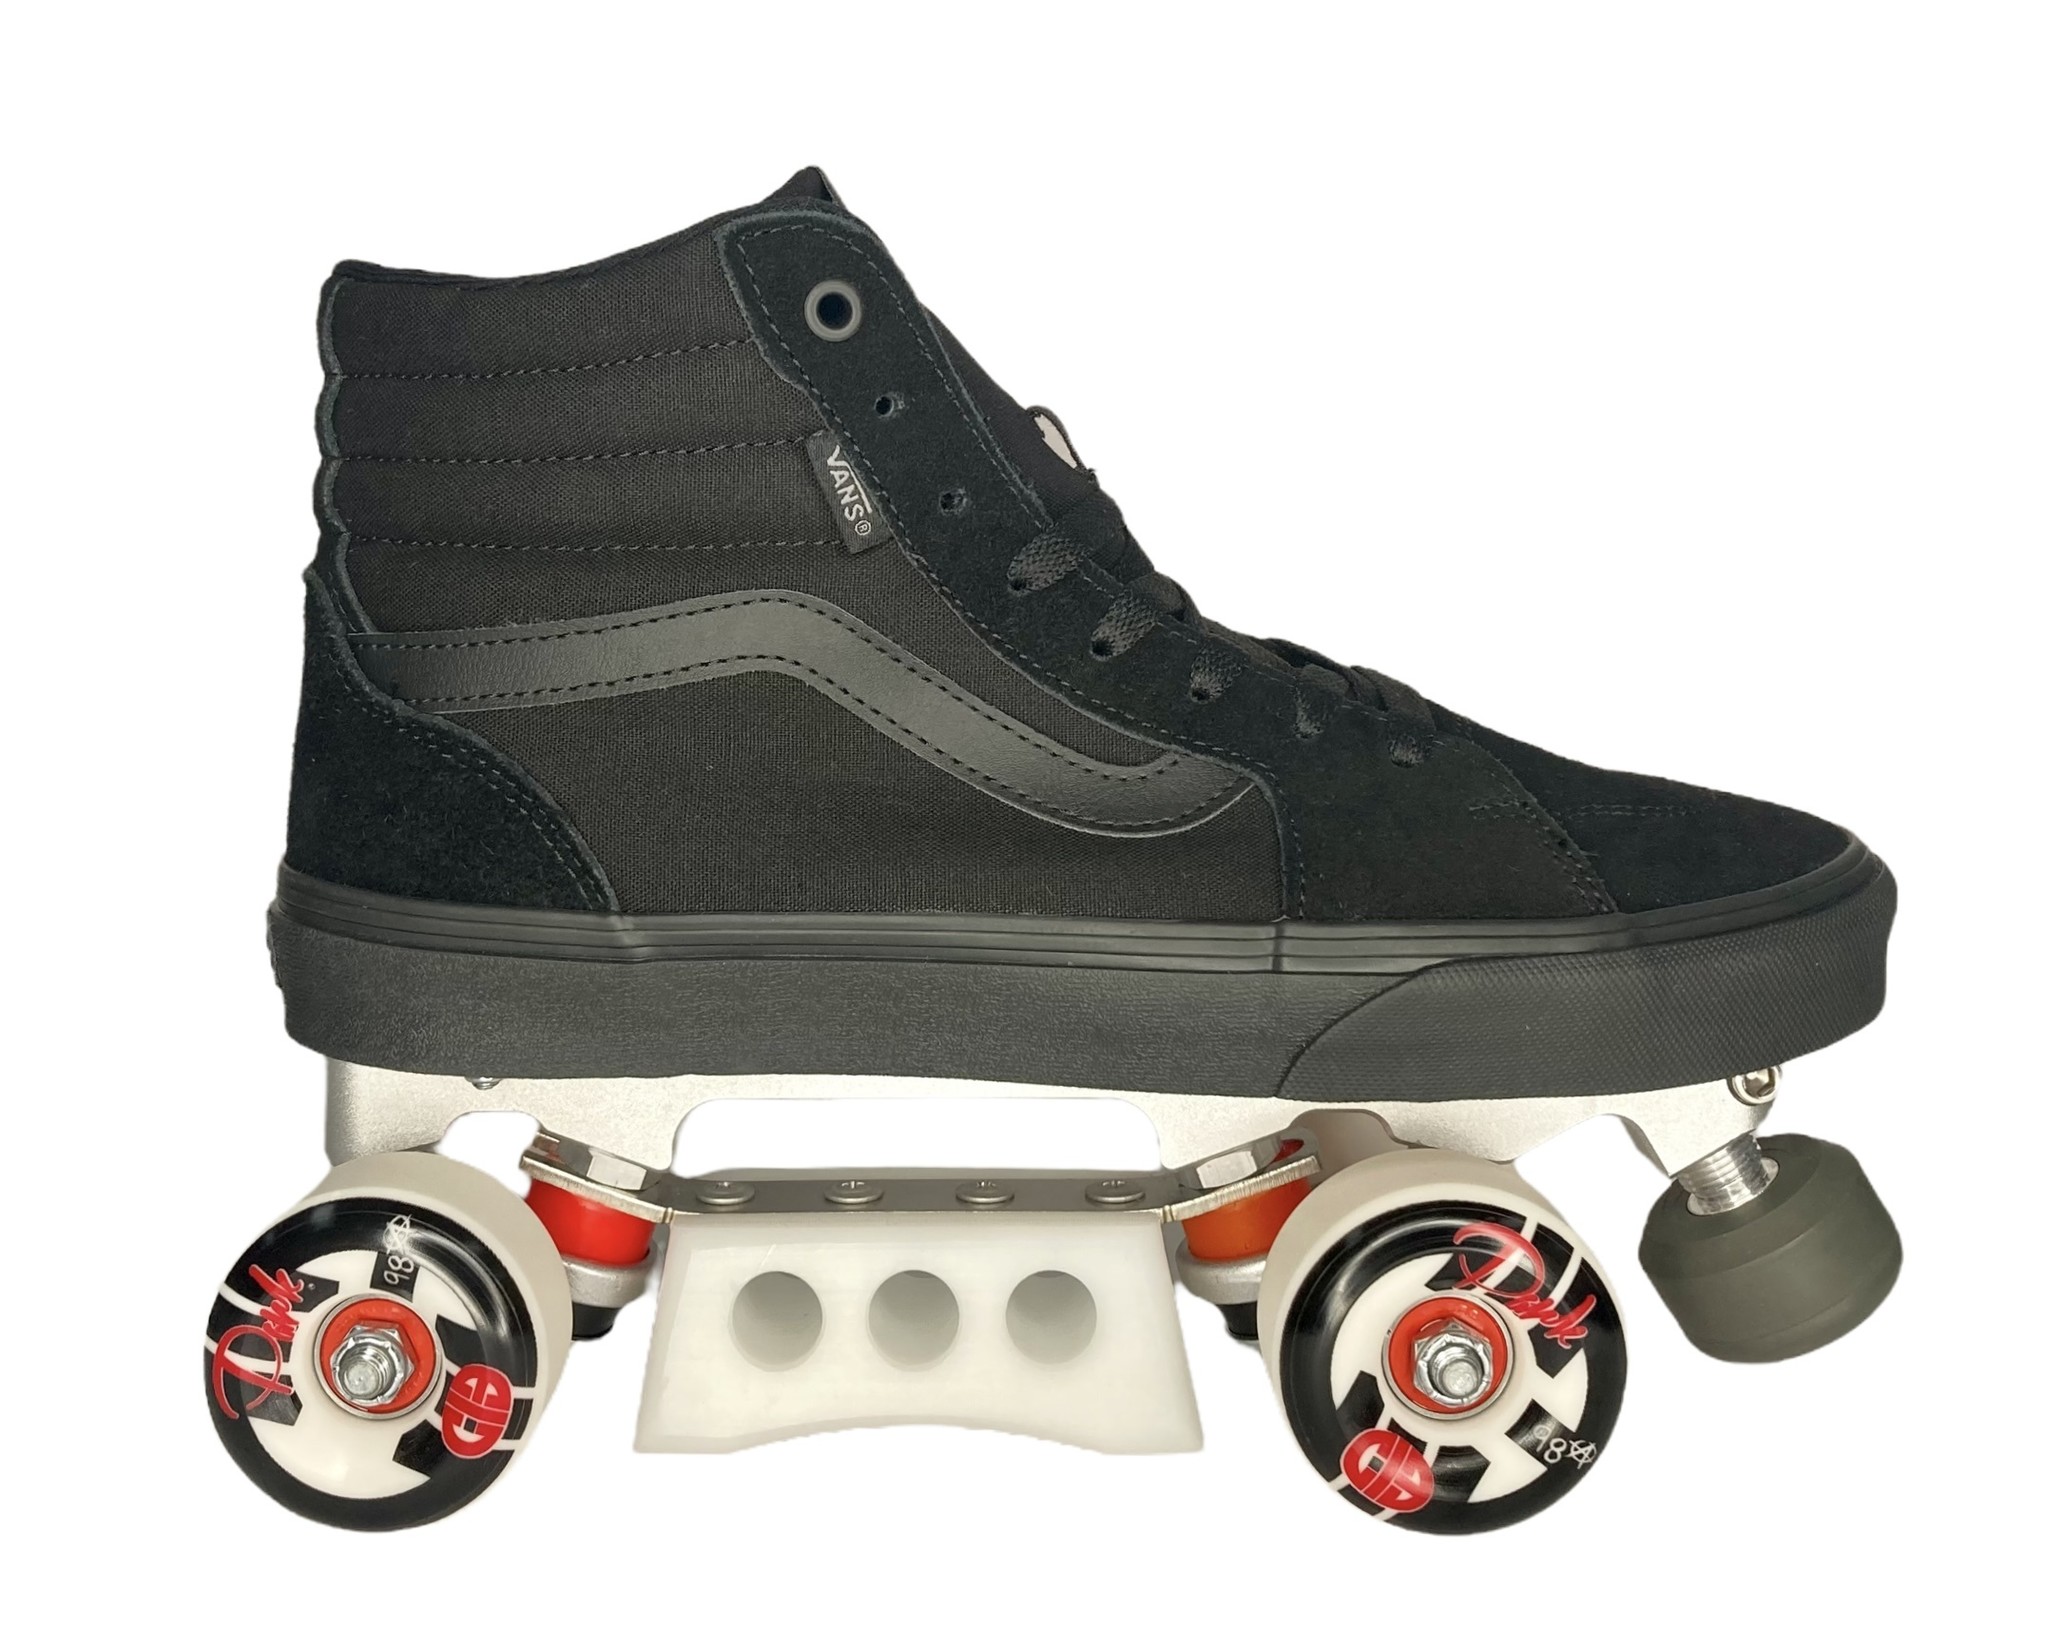 Custom Vans Old Skool Roller Skates with Hybrid/ Outdoor Wheels